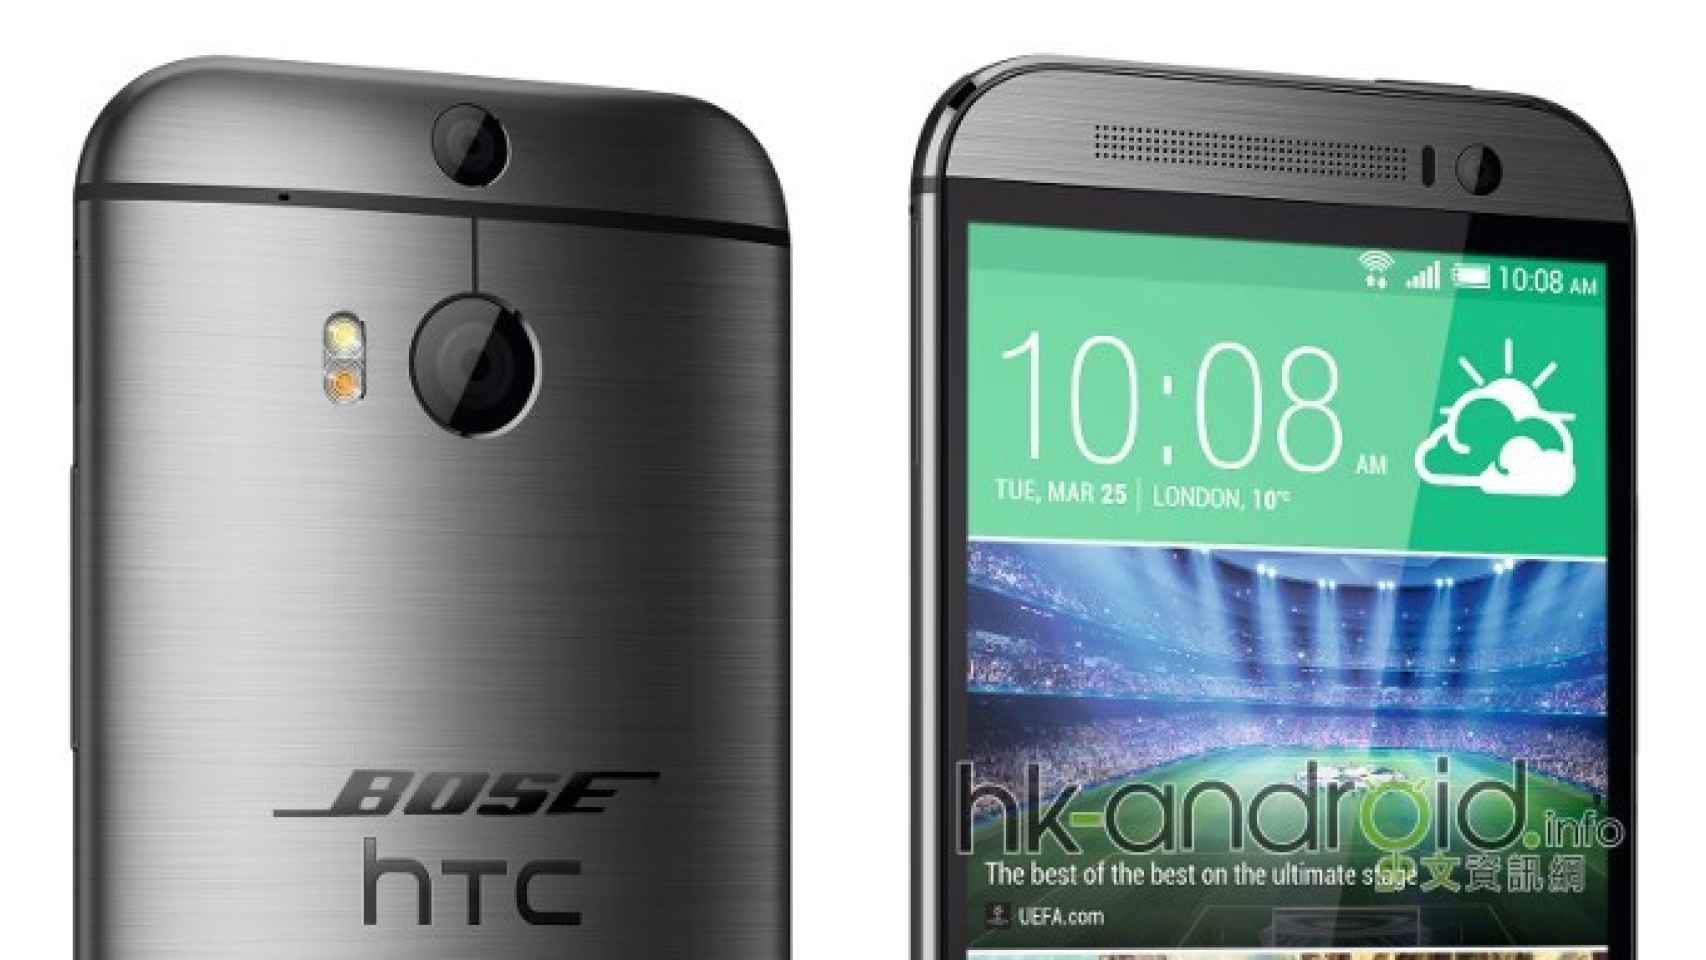 HTC y Bose se aliarían para mantener un excelente sonido en el One M9